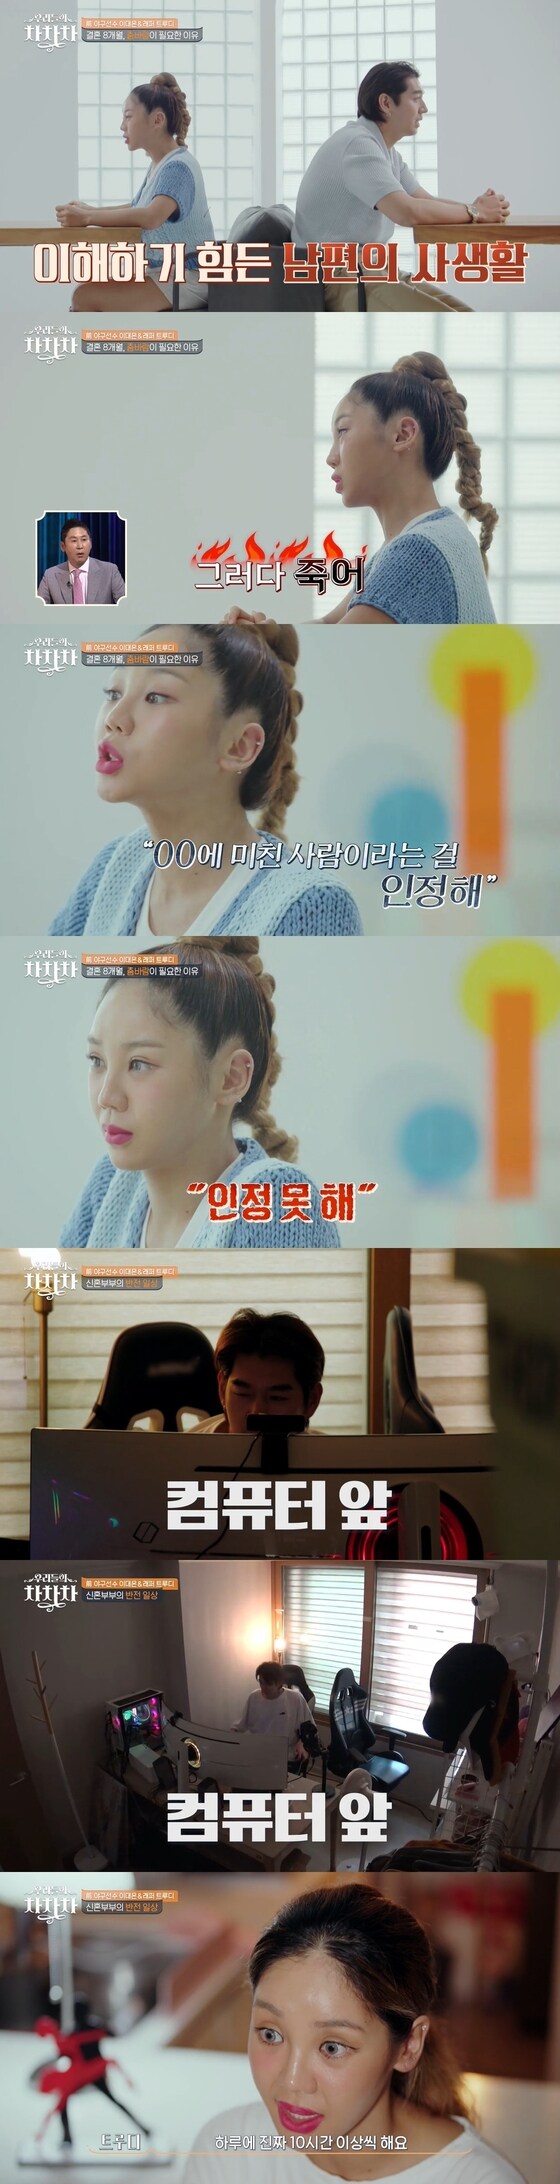 tvN 우리들의 차차차 캡처